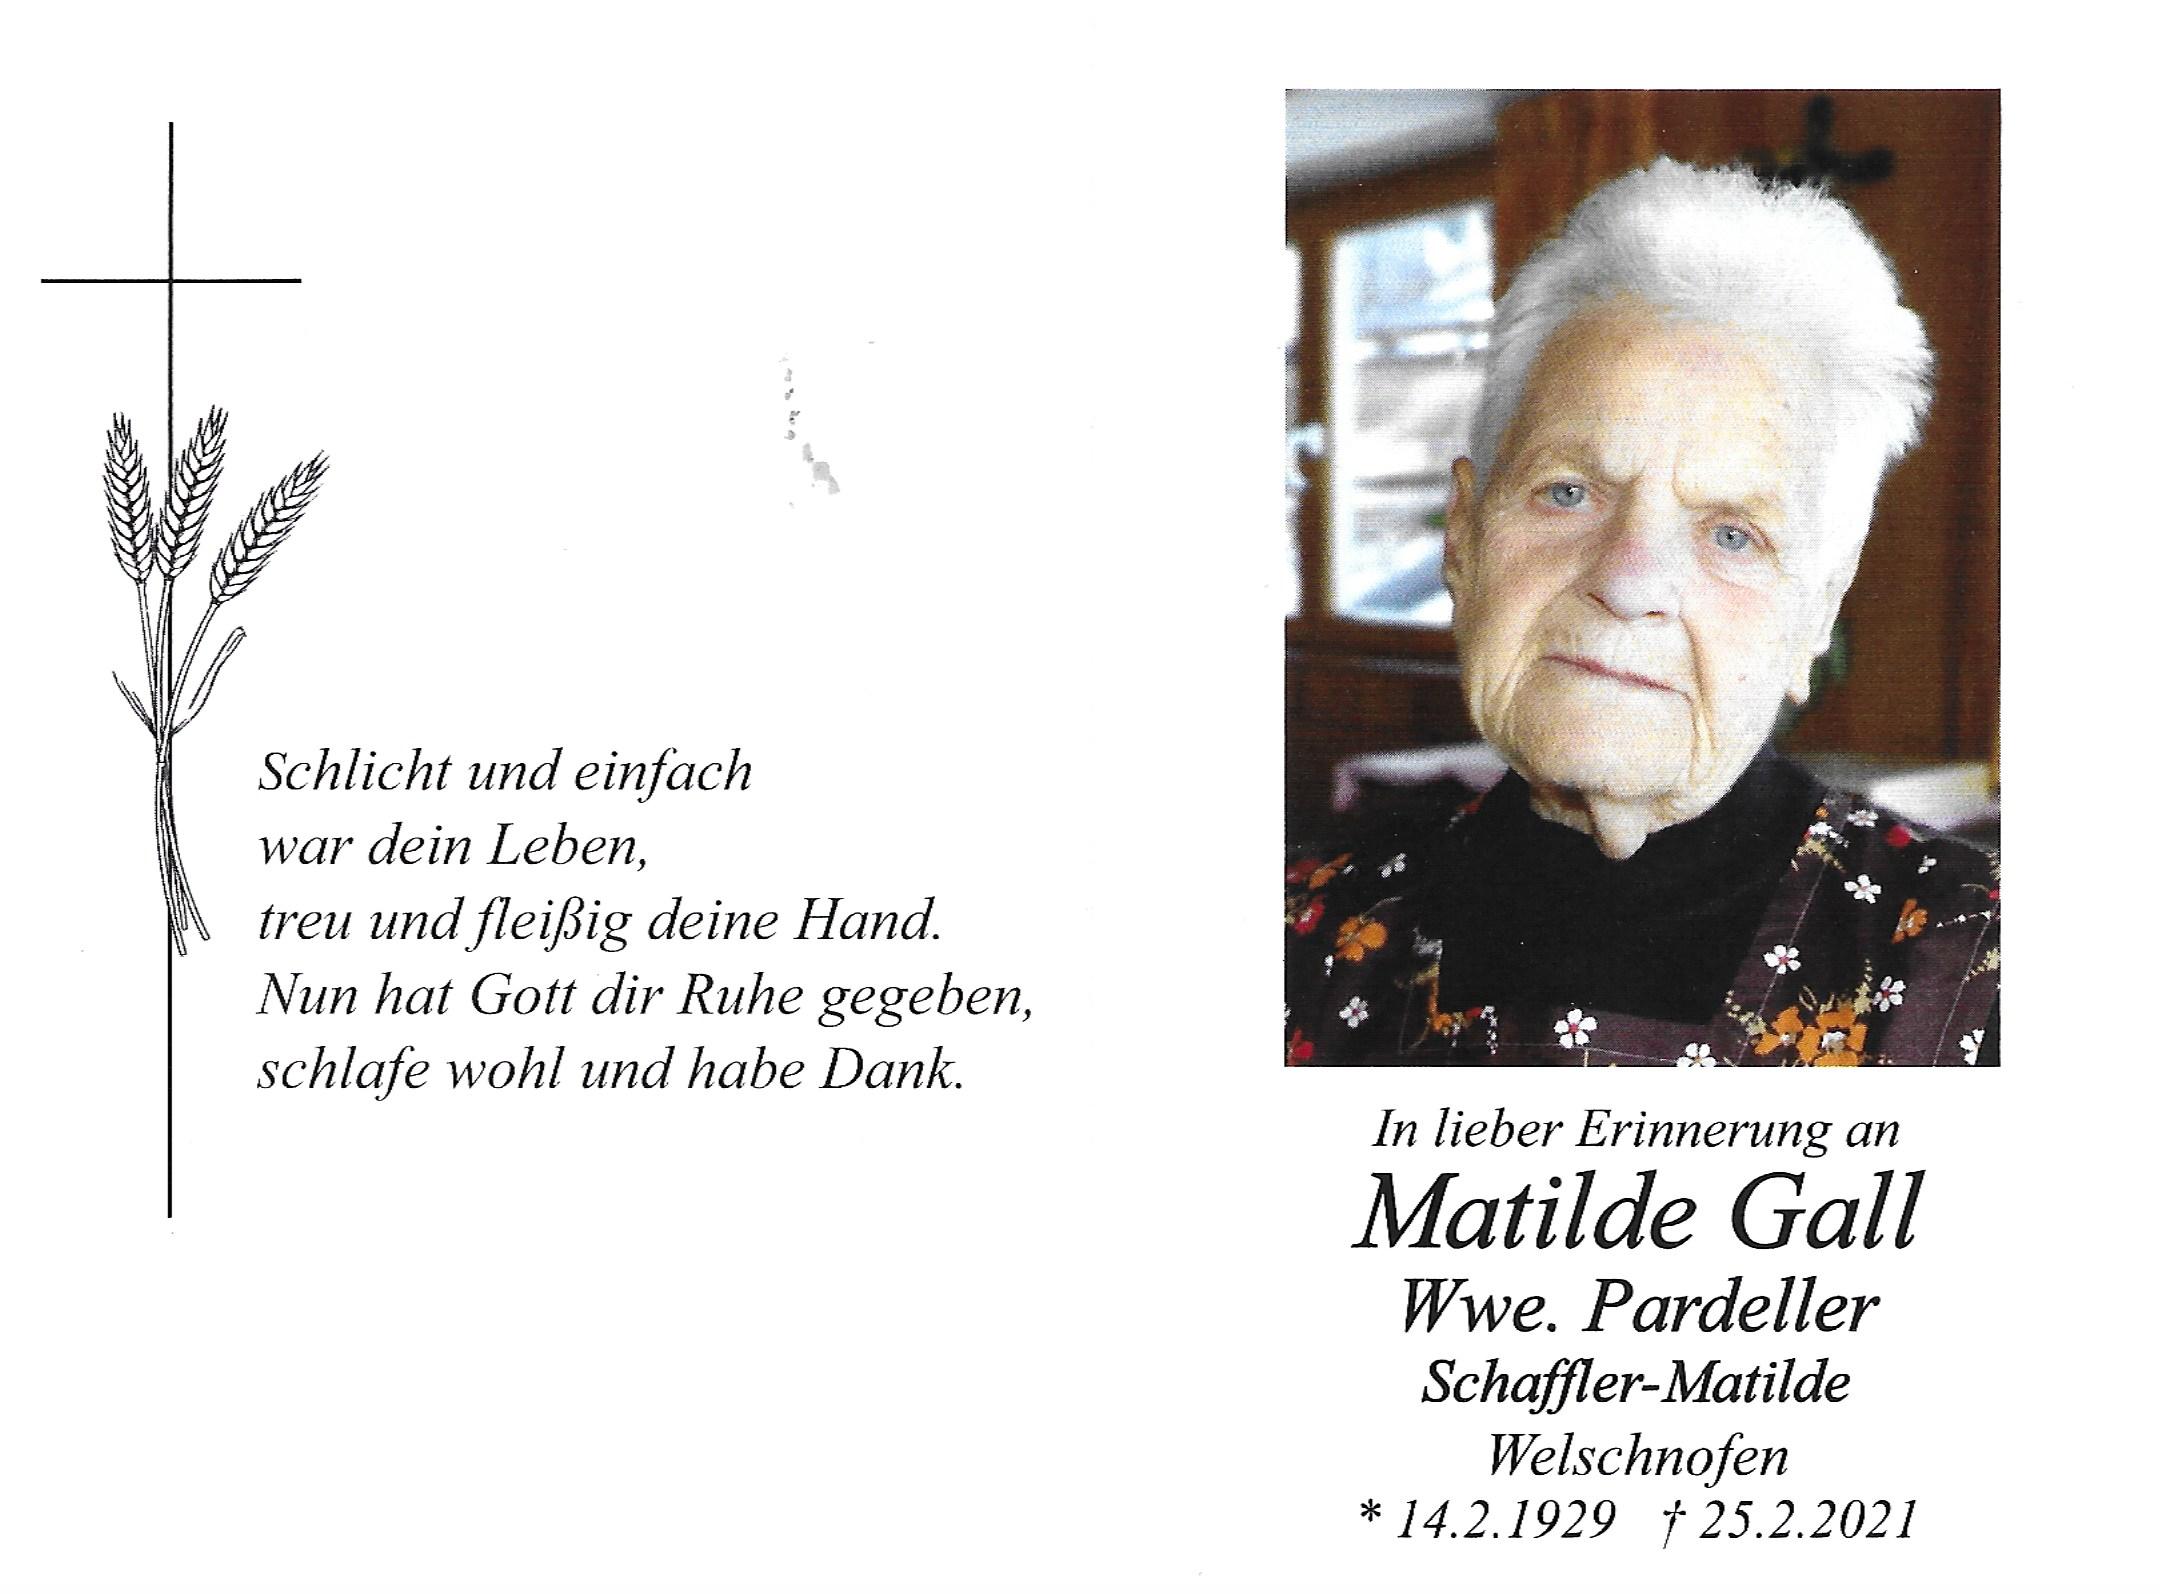 Matilde Gall Wwe. Pardeller